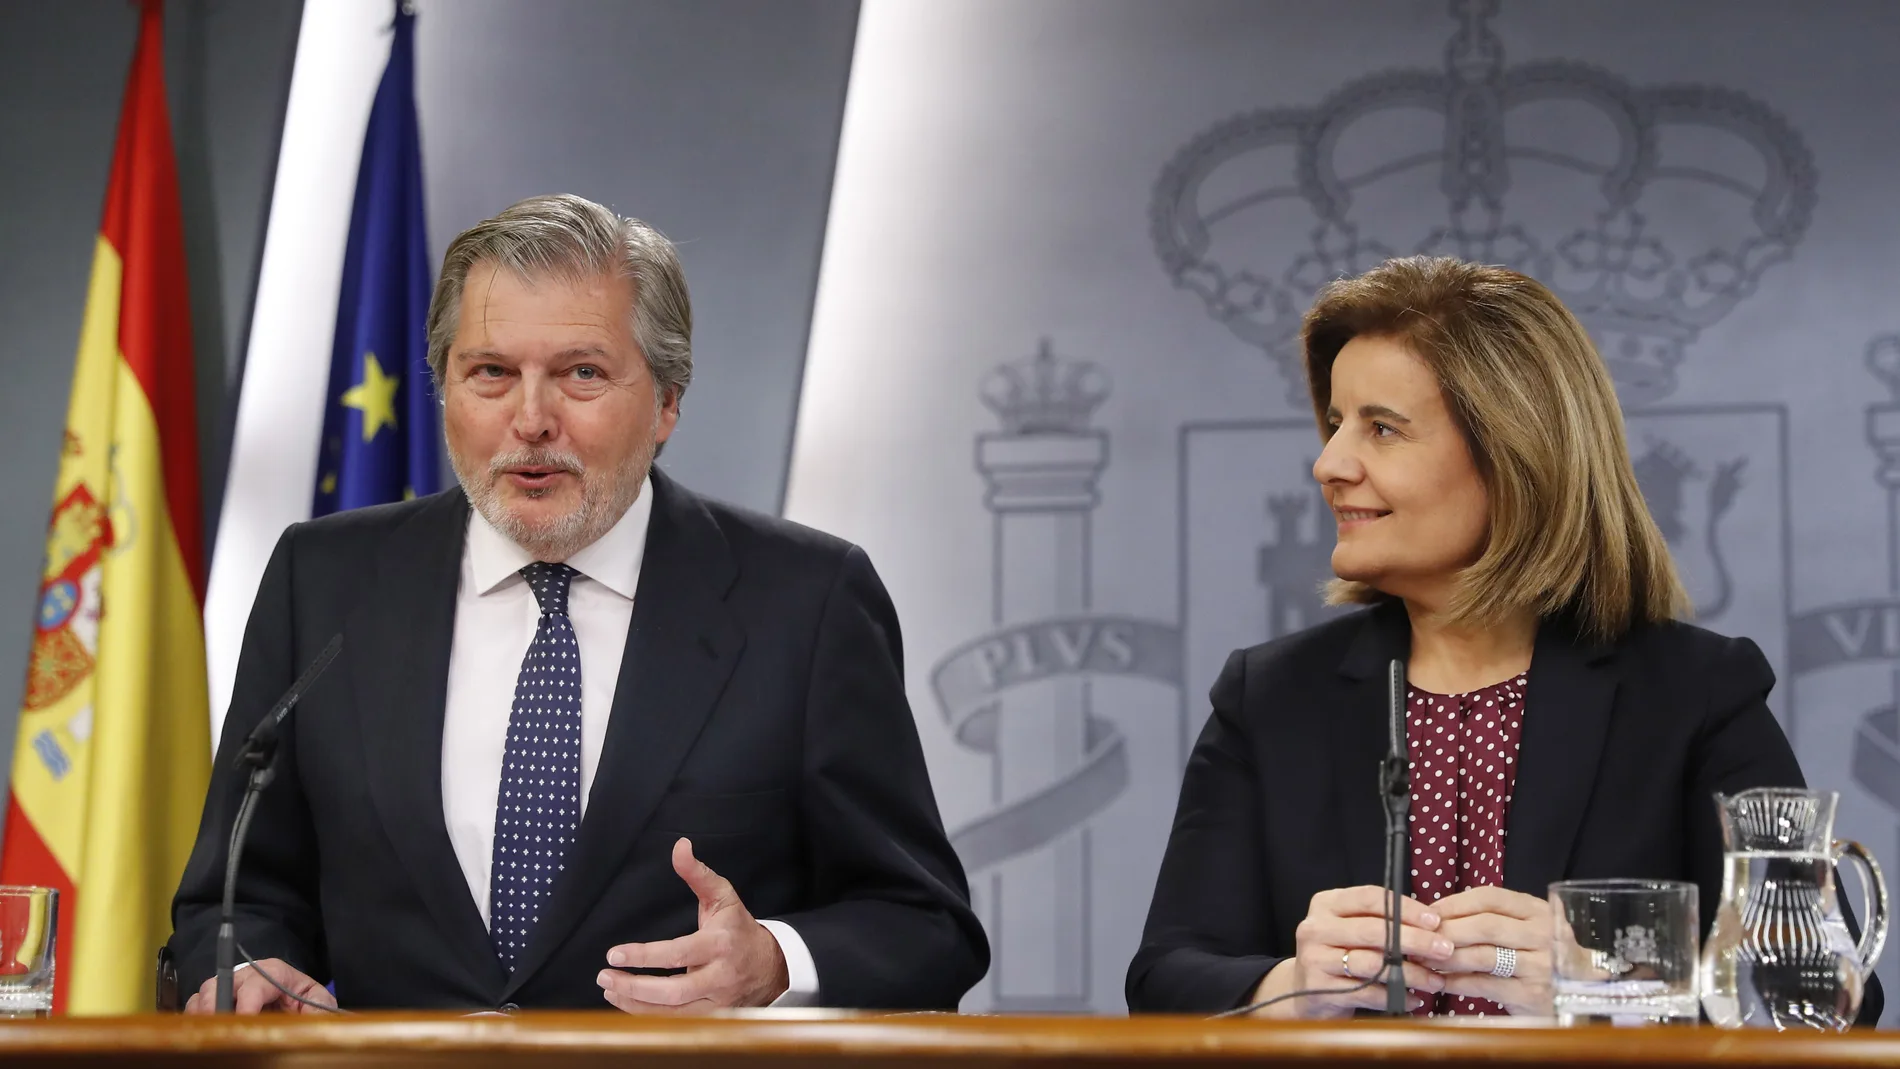  El ministro de Educación, Cultura y Deportes y Portavoz, Íñigo Méndez de Vigo, y la ministra de Empleo y Seguridad Social, Fátima Báñez, durante la rueda de prensa